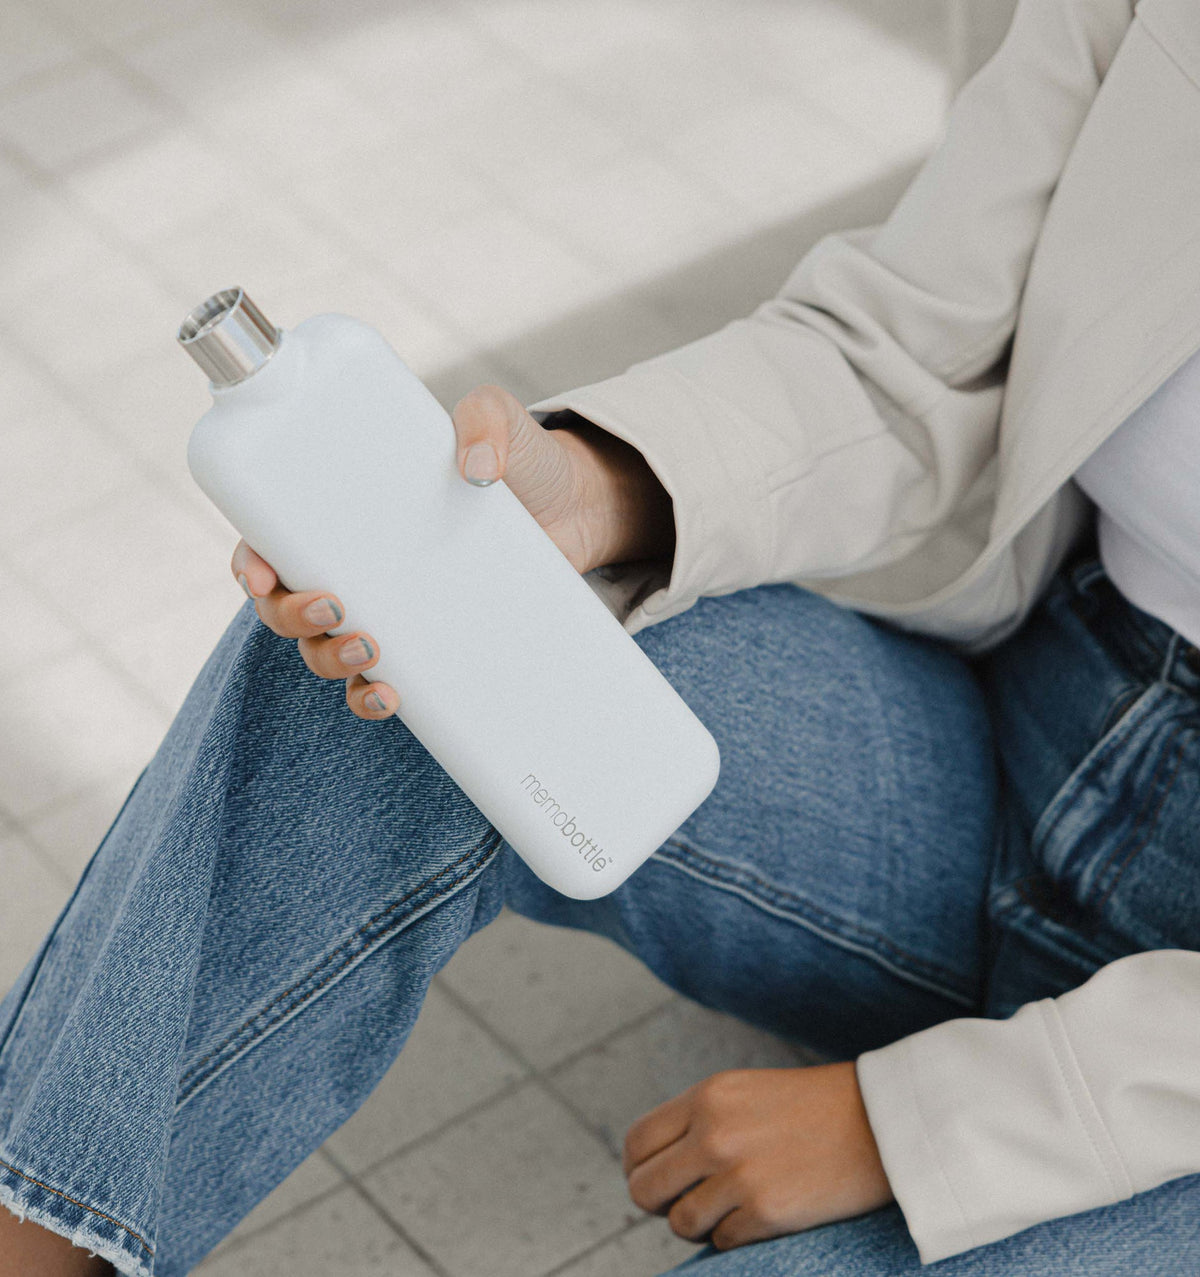 Memobottle Slim Stainless Steel Water Bottle - White